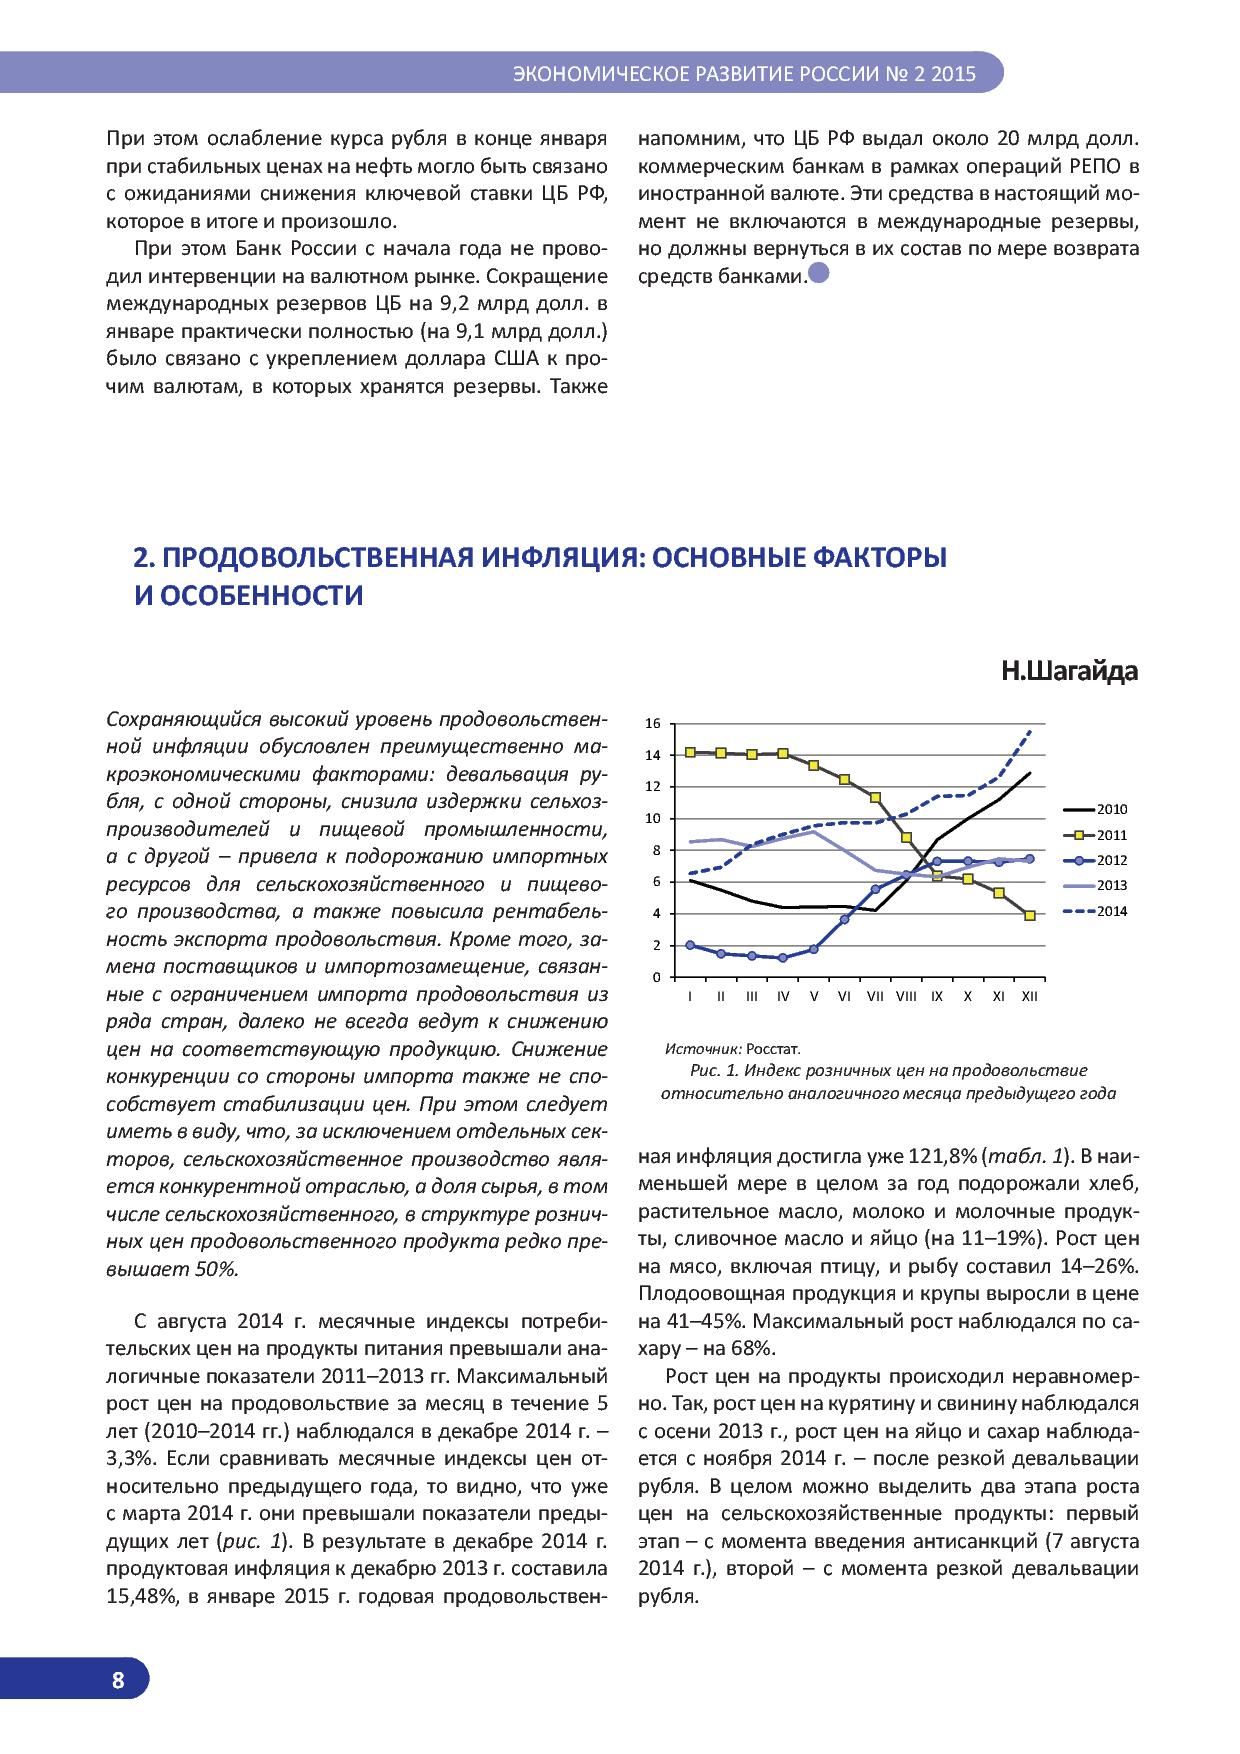   Оперативный мониторинг экономической ситуации в России. Тенденции и вызовы социально-экономического развития  - фото 9